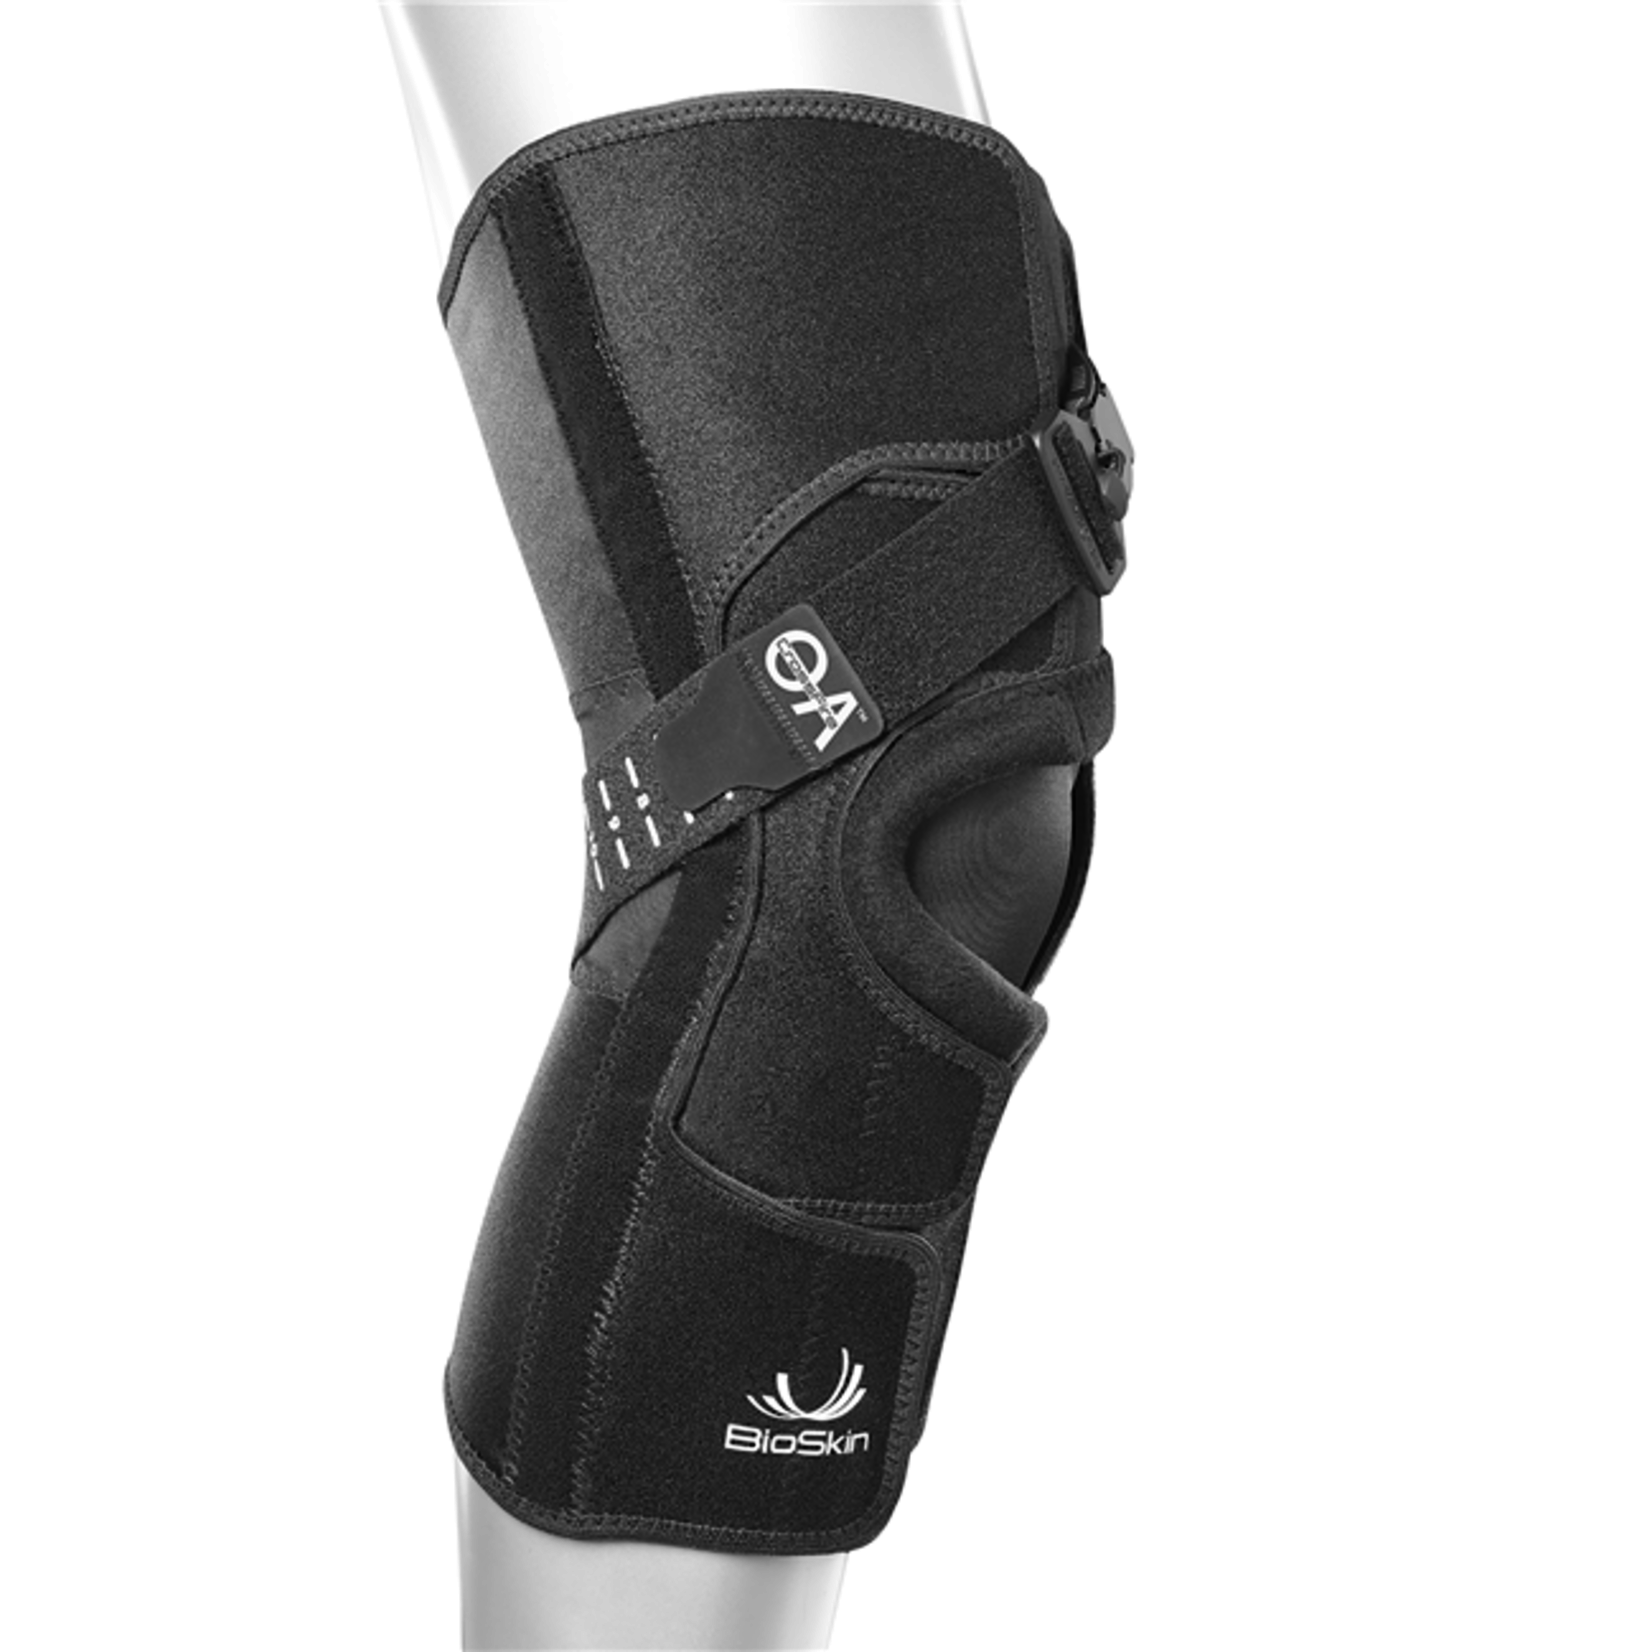 Bioskin Crossfire OA Knee Brace